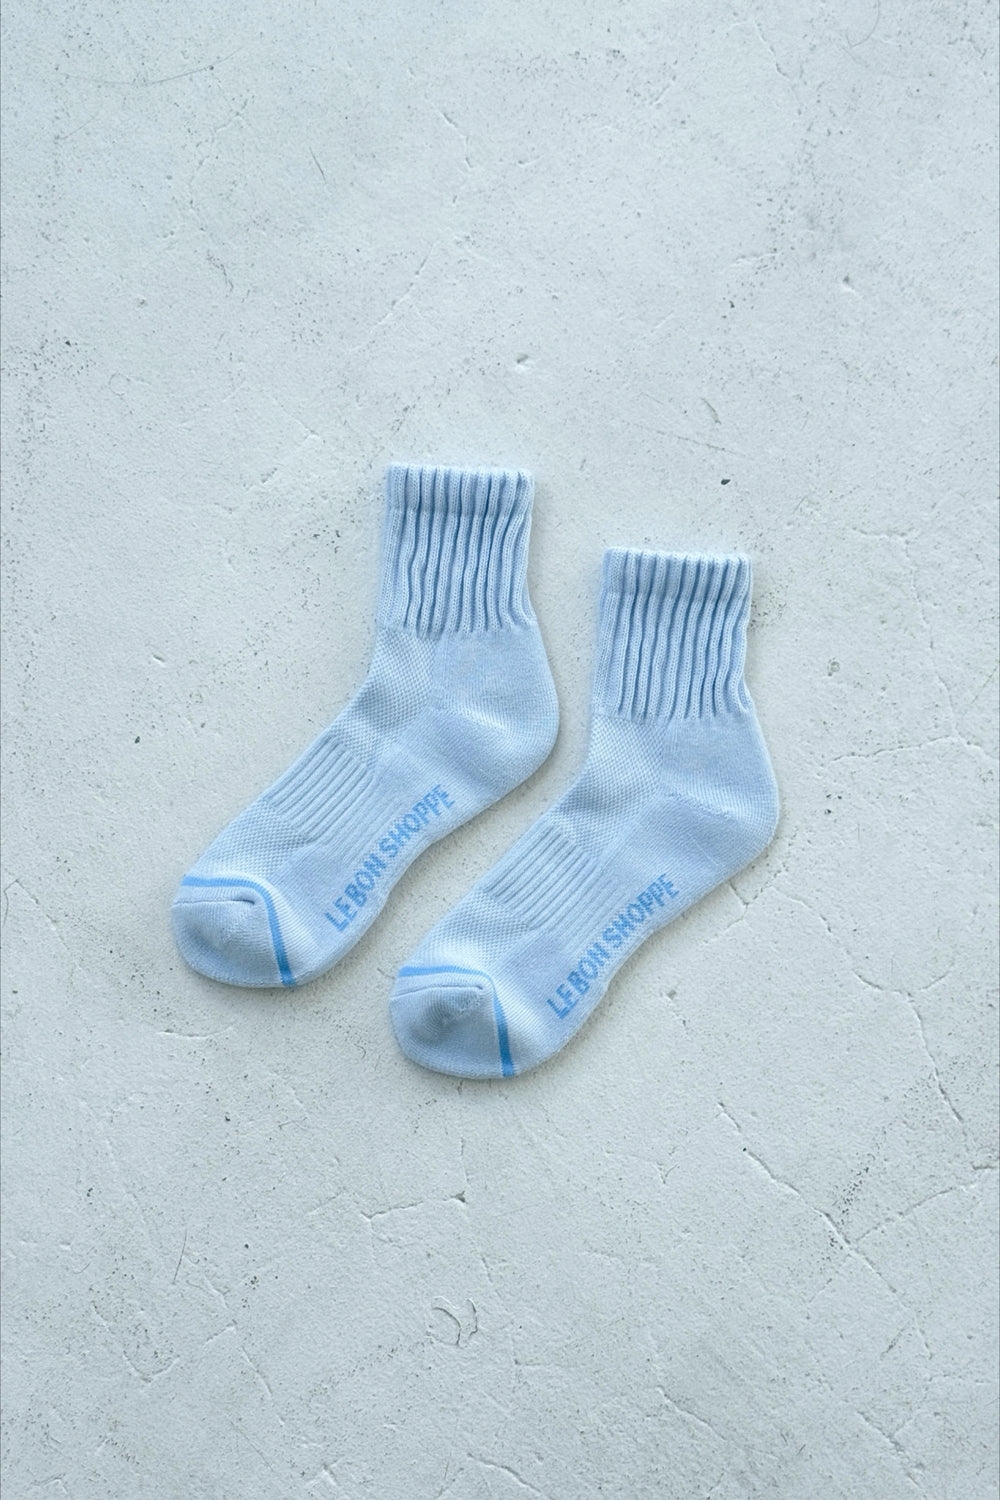 Baby Blue Swing Socks